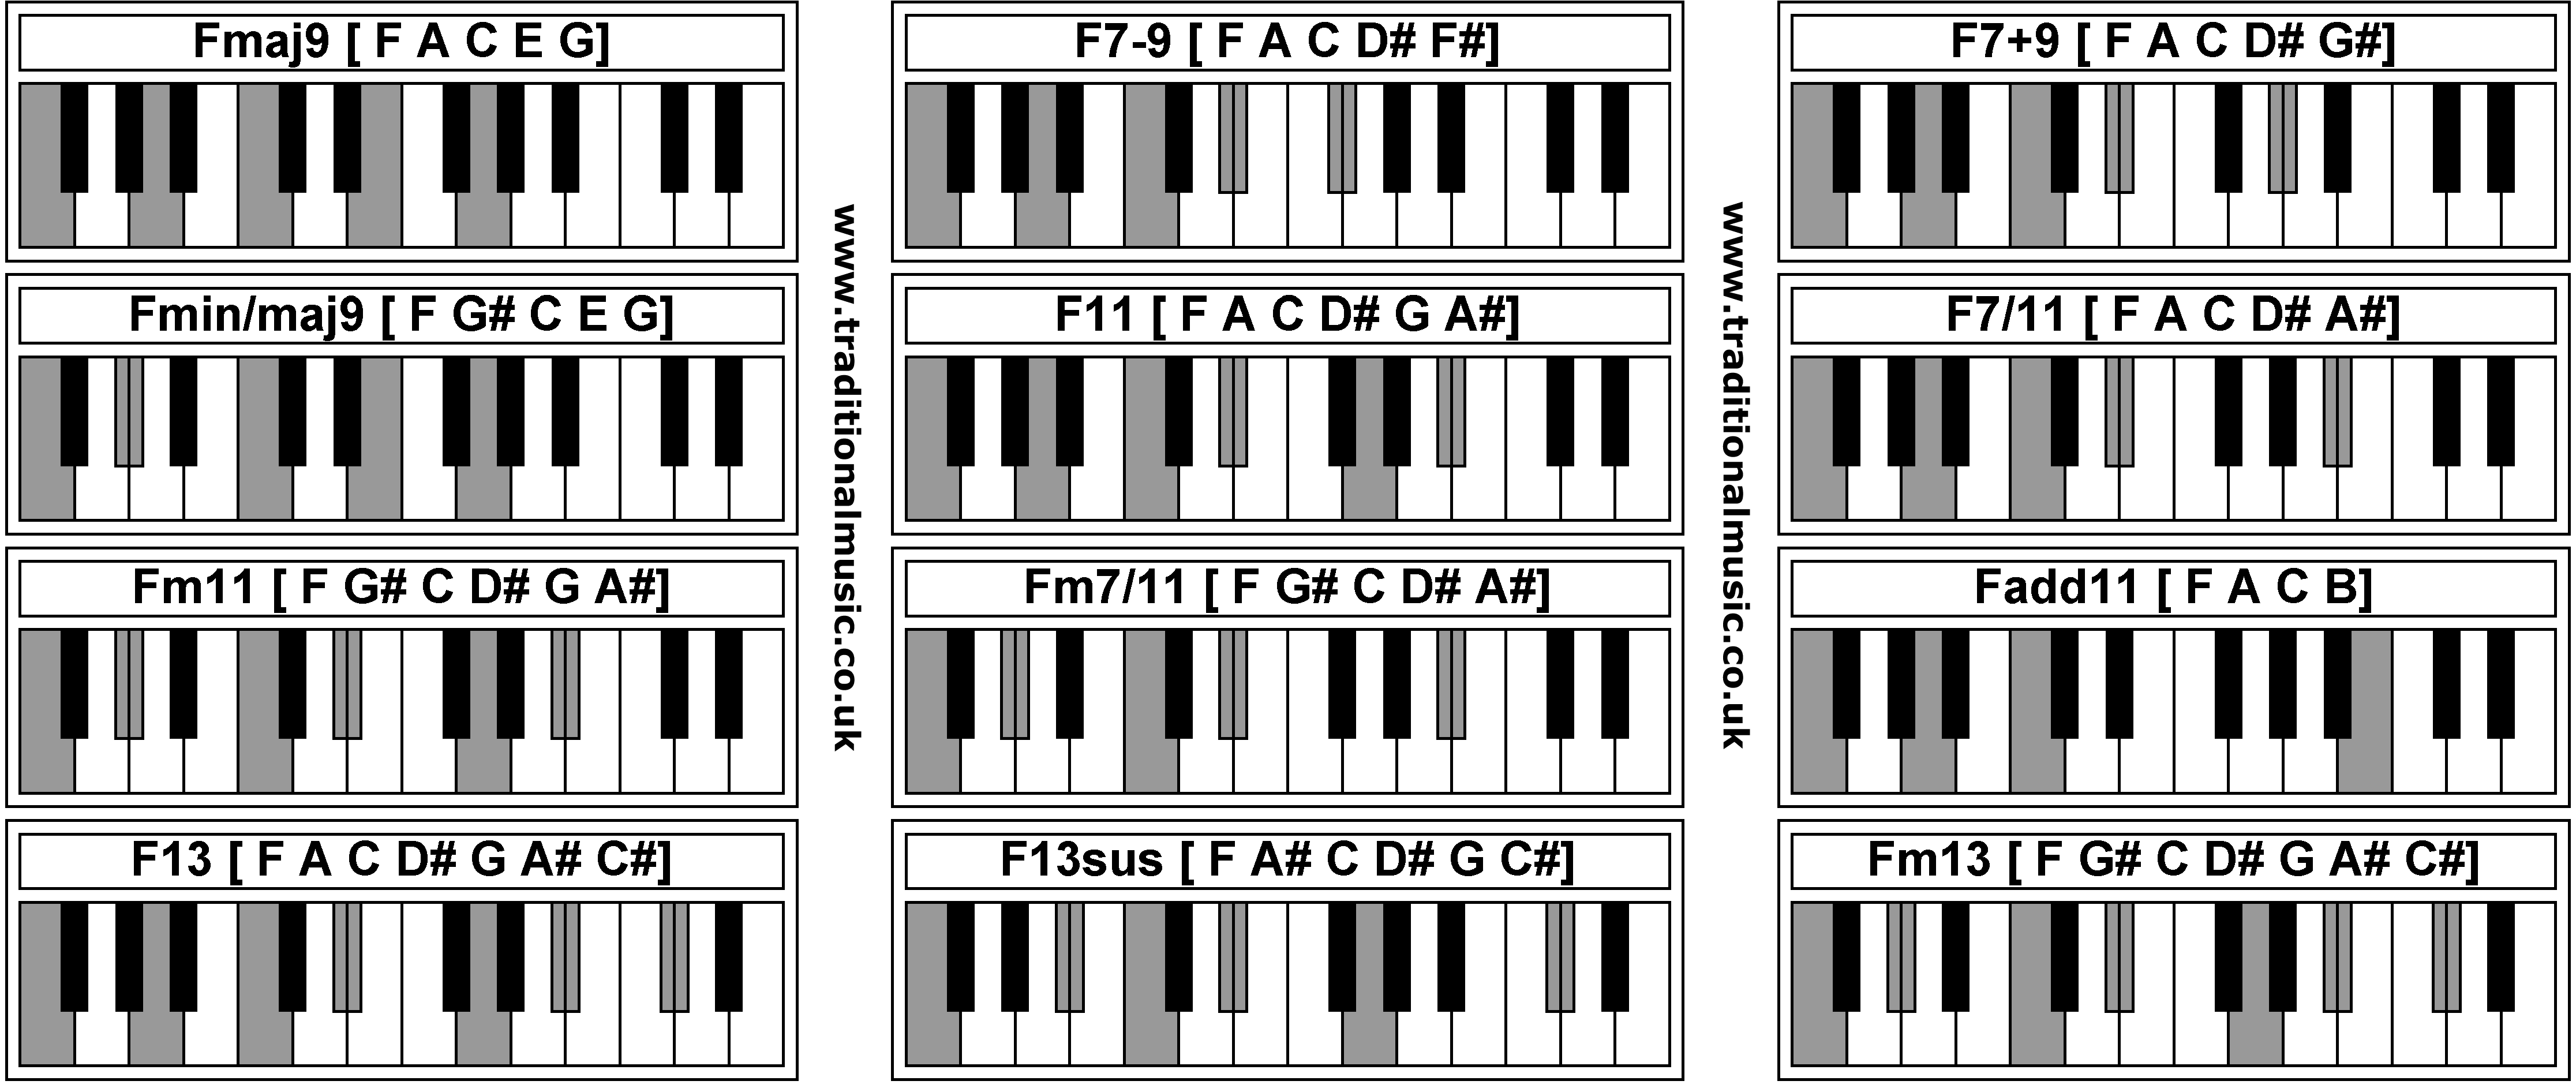 Piano Chords - Fmaj9  F7-9  F7+9  Fmin/maj9  F11  F7/11  Fm11  Fm7/11  Fadd11  F13  F13sus  Fm13